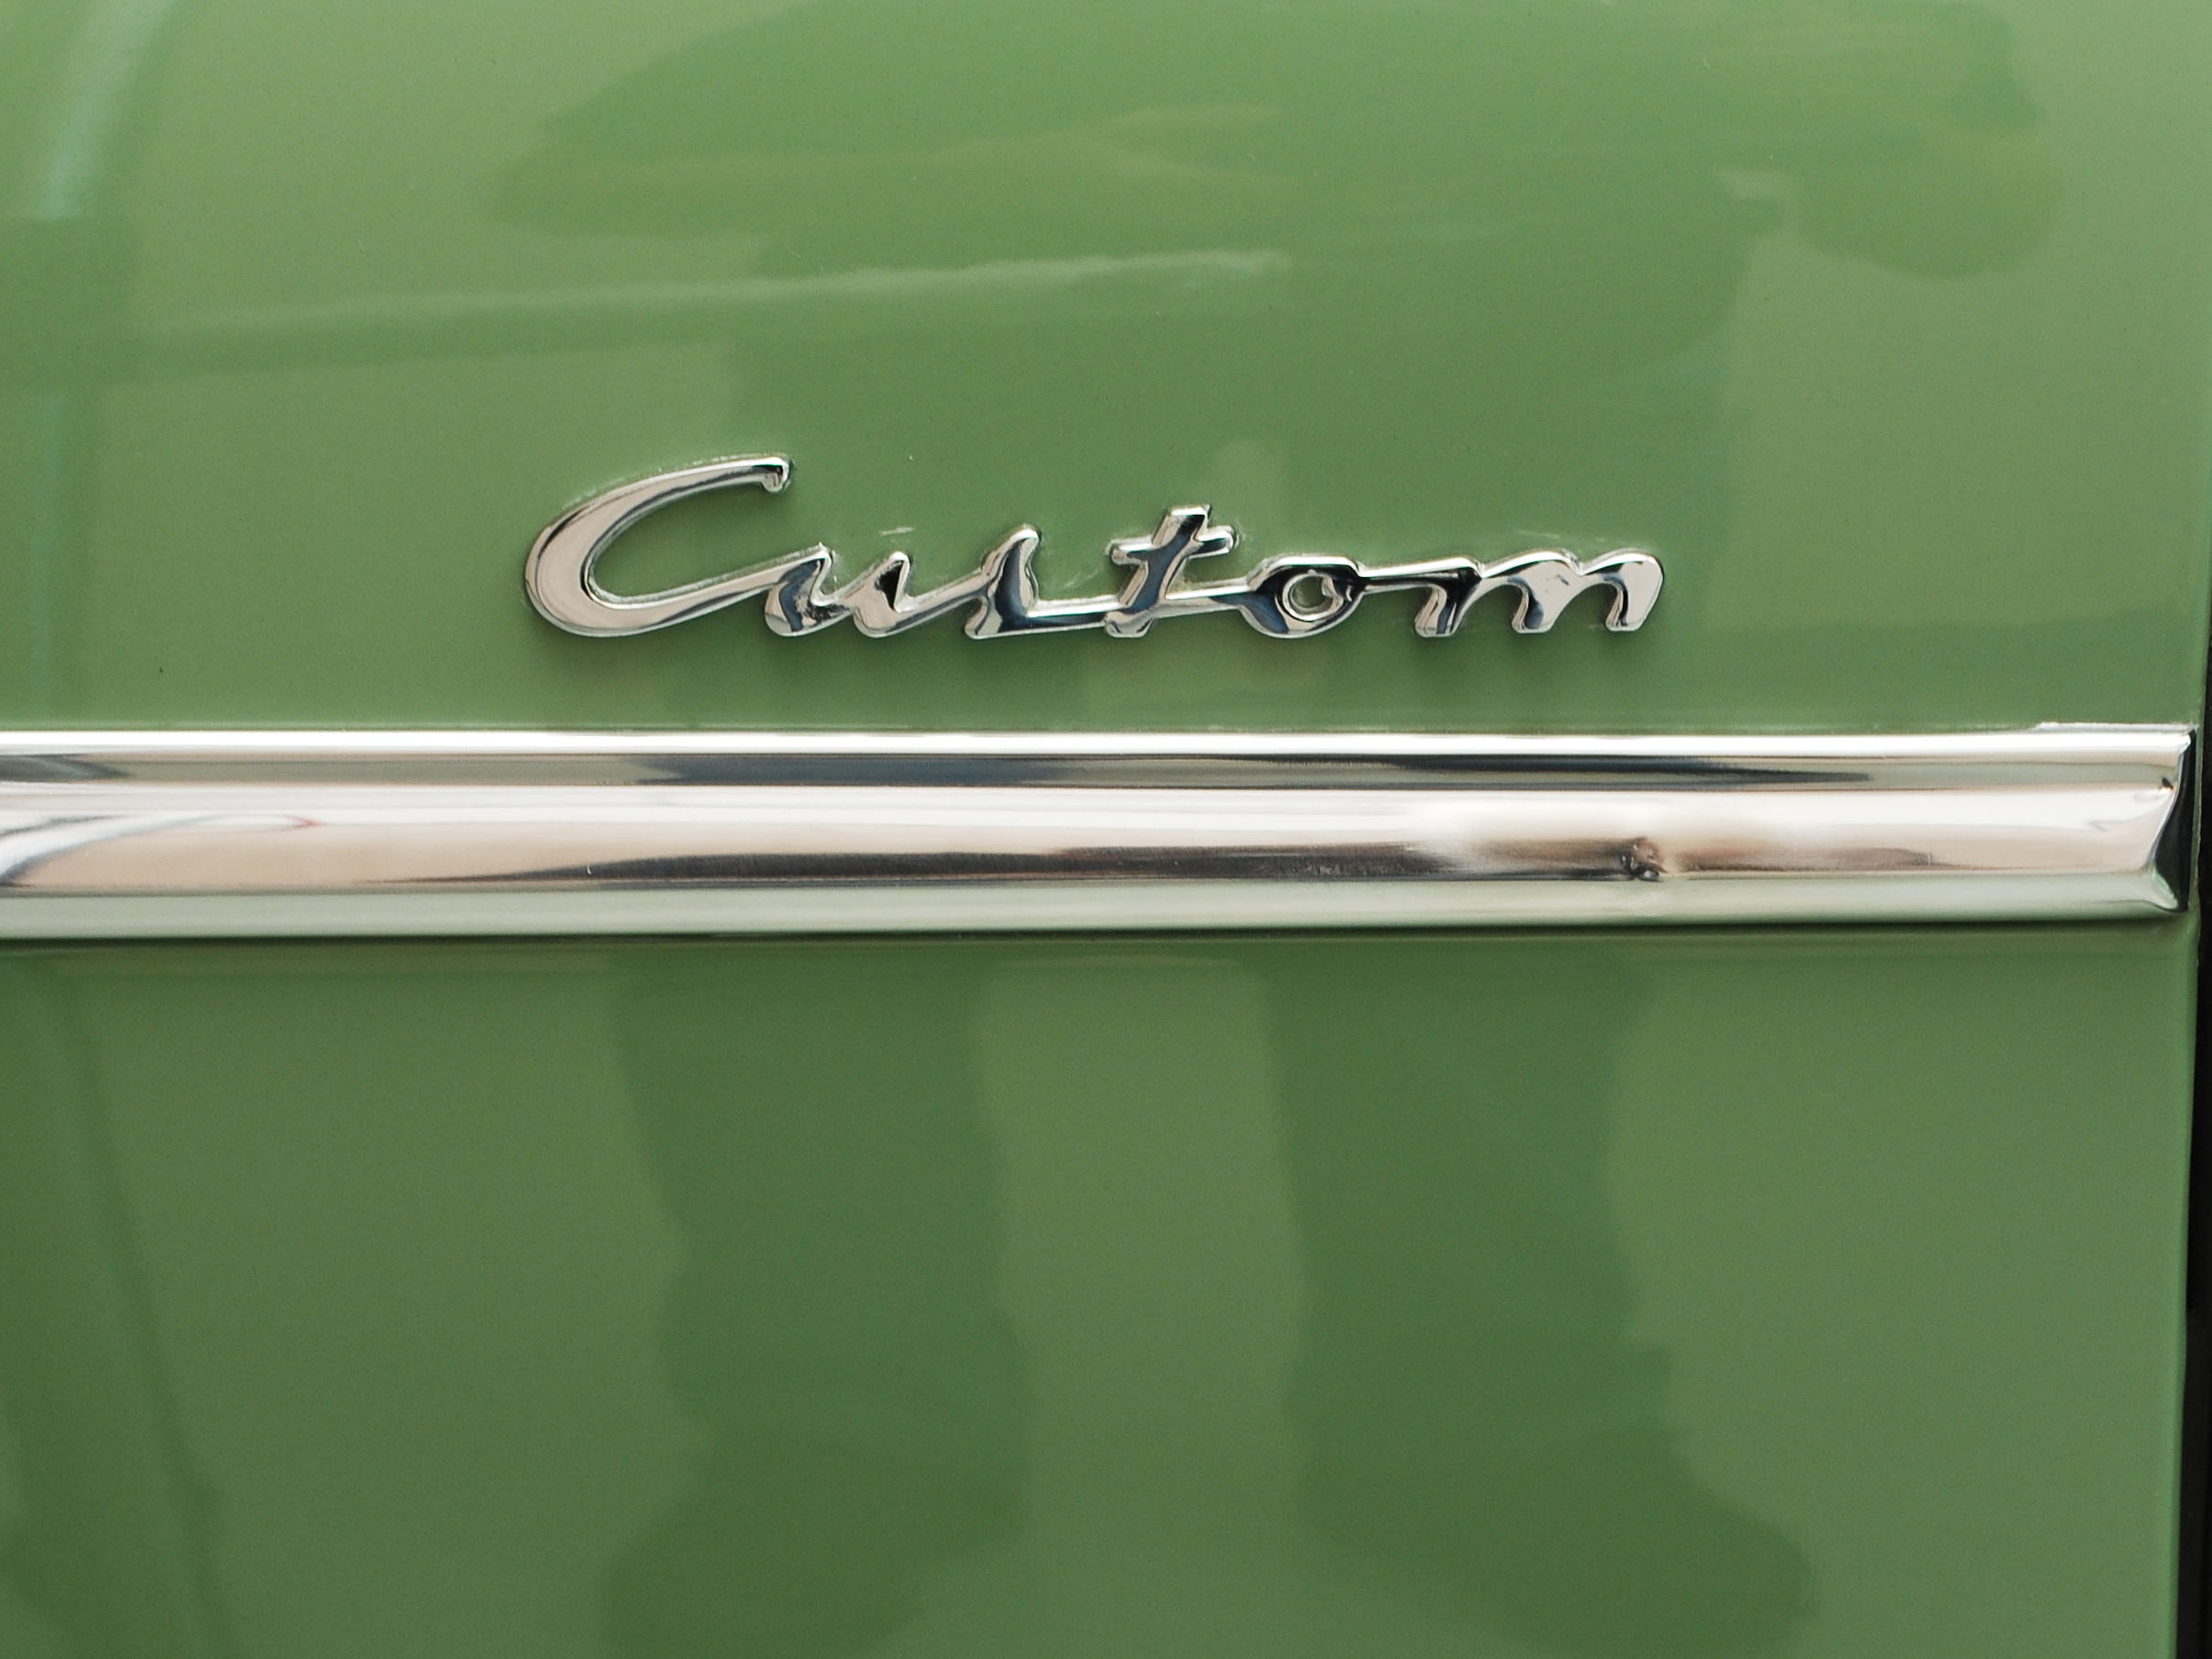 1950 desoto custom suburban